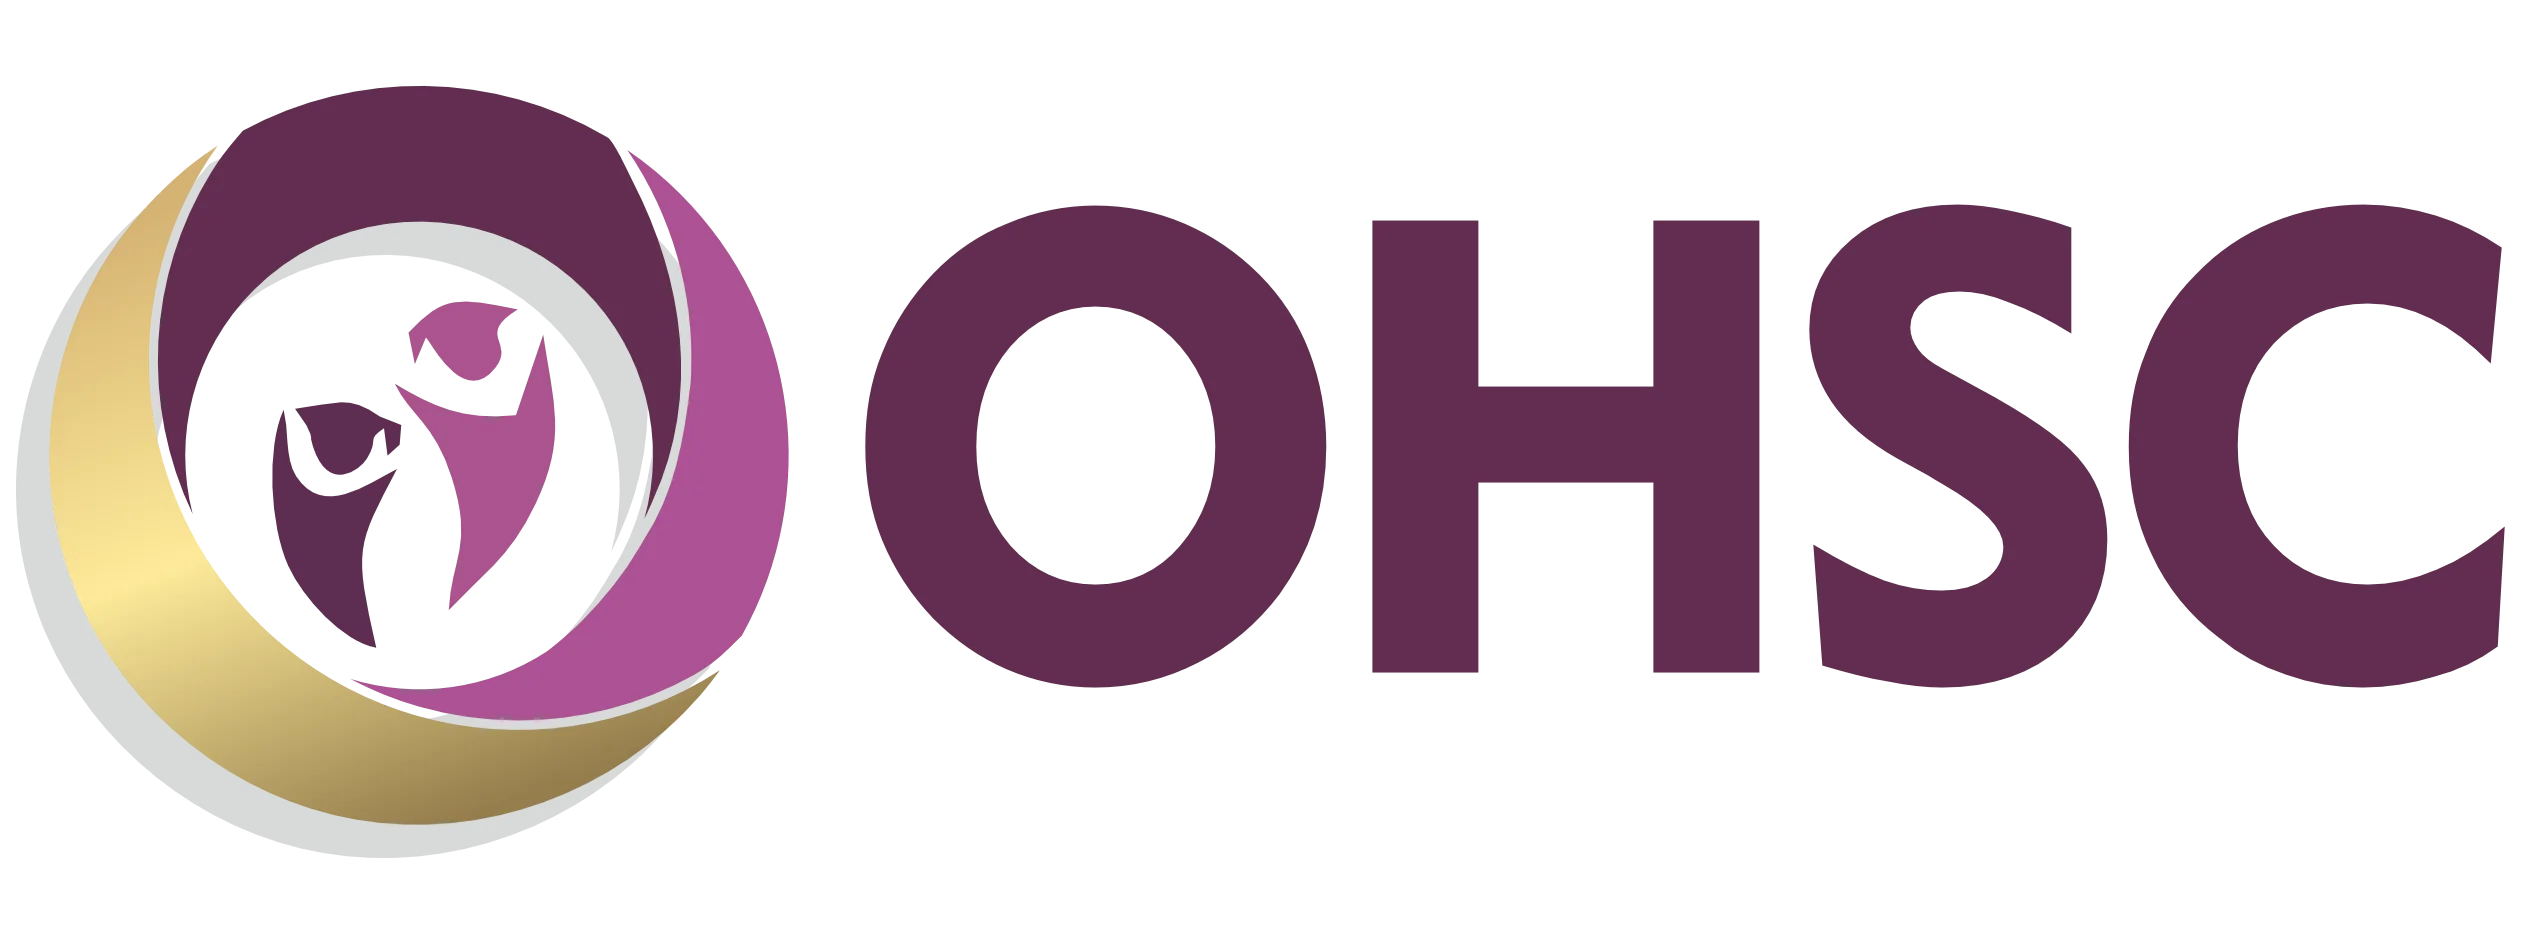 OxfordHomeStudy Logo